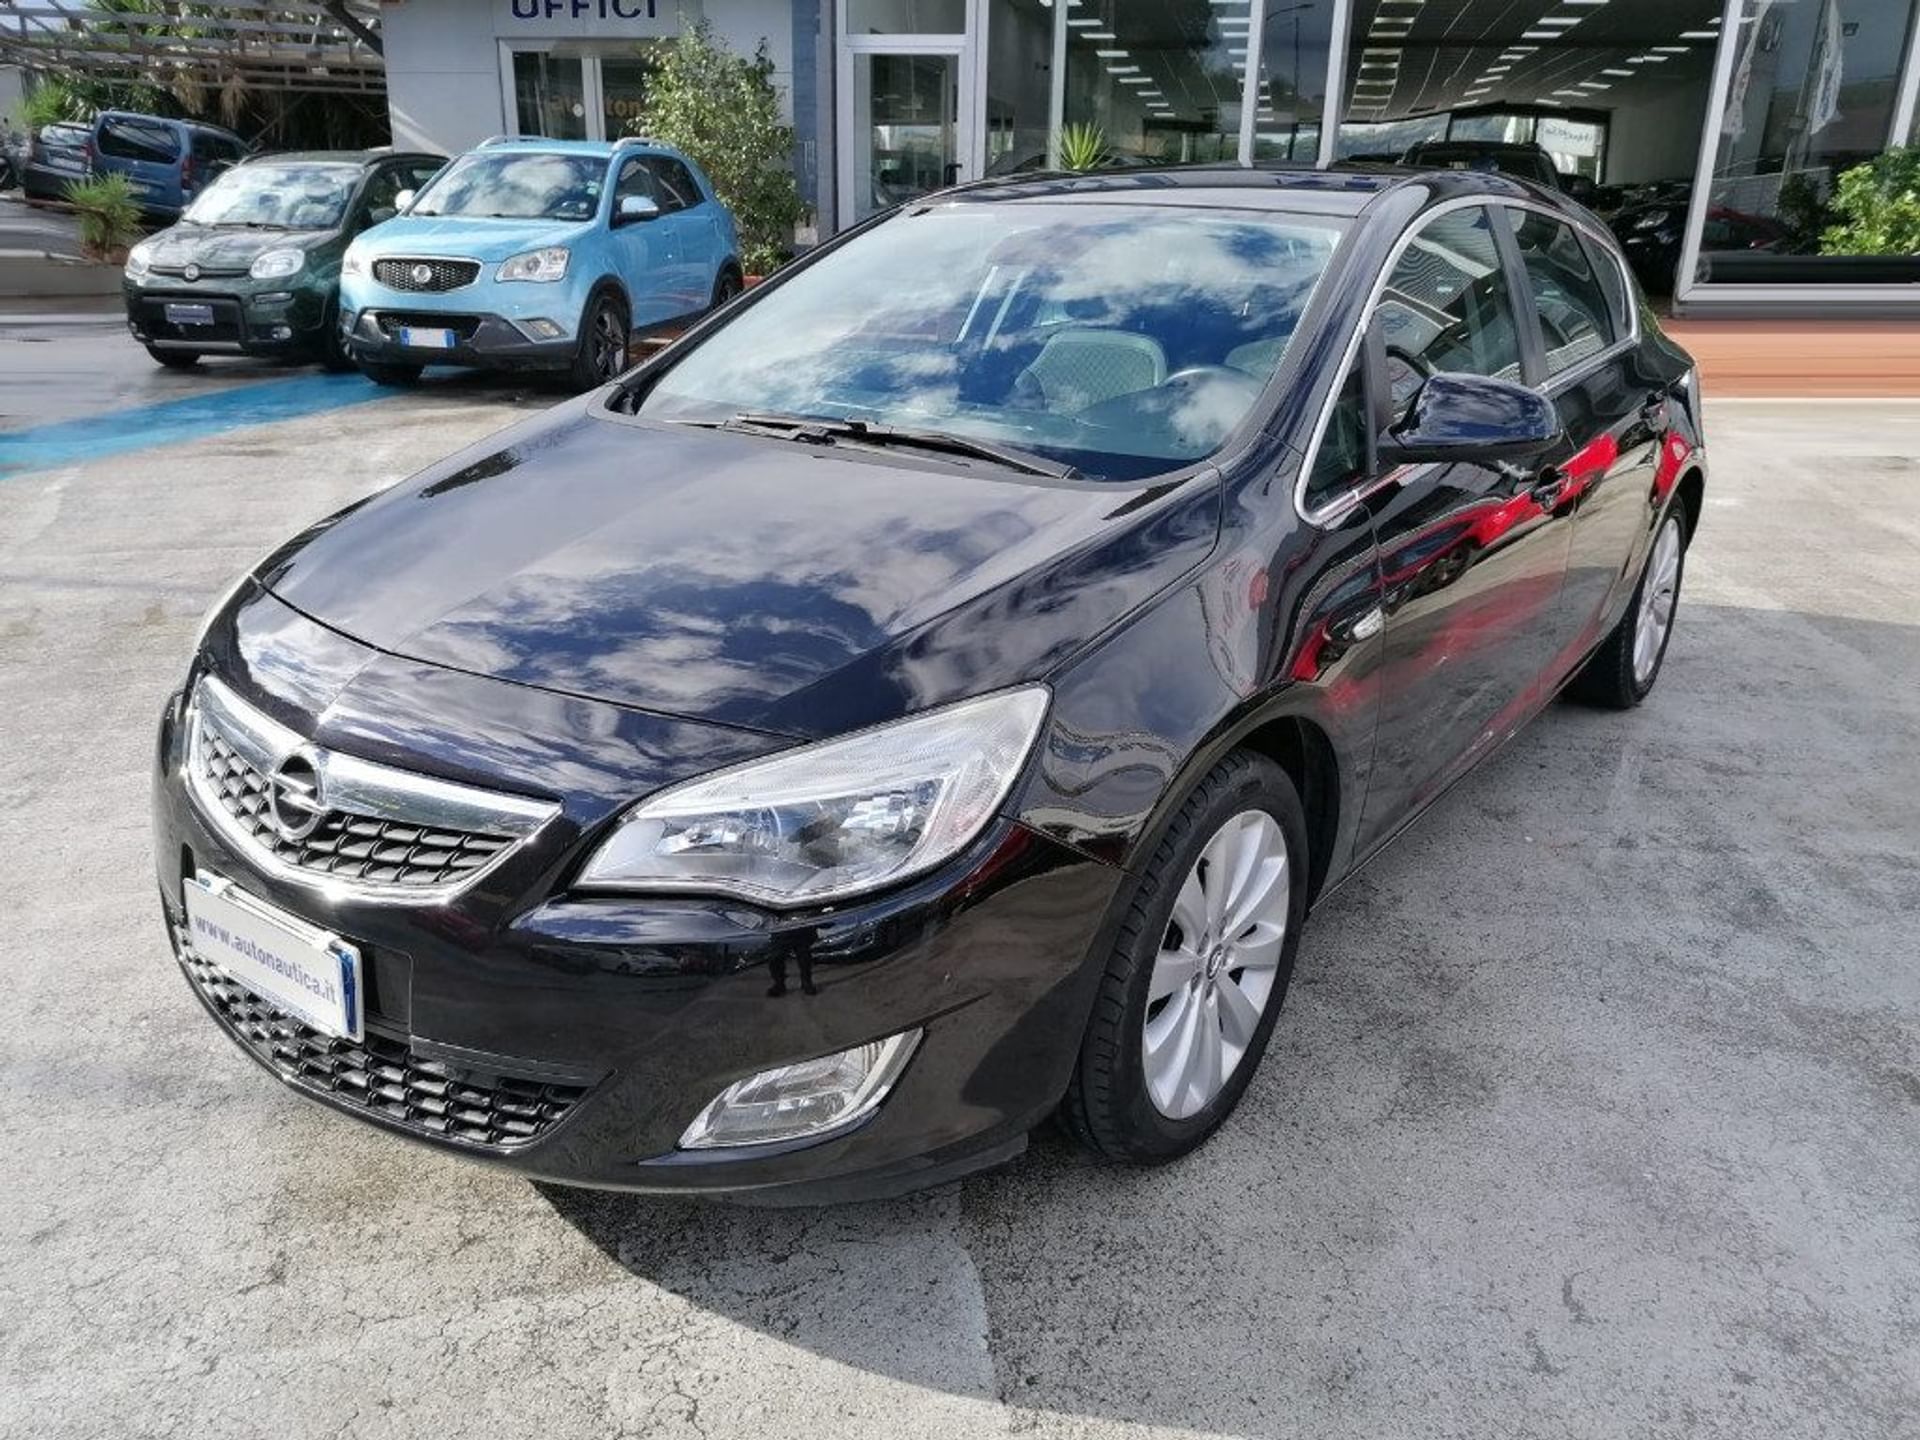 Opel Astra 1.6 115CV